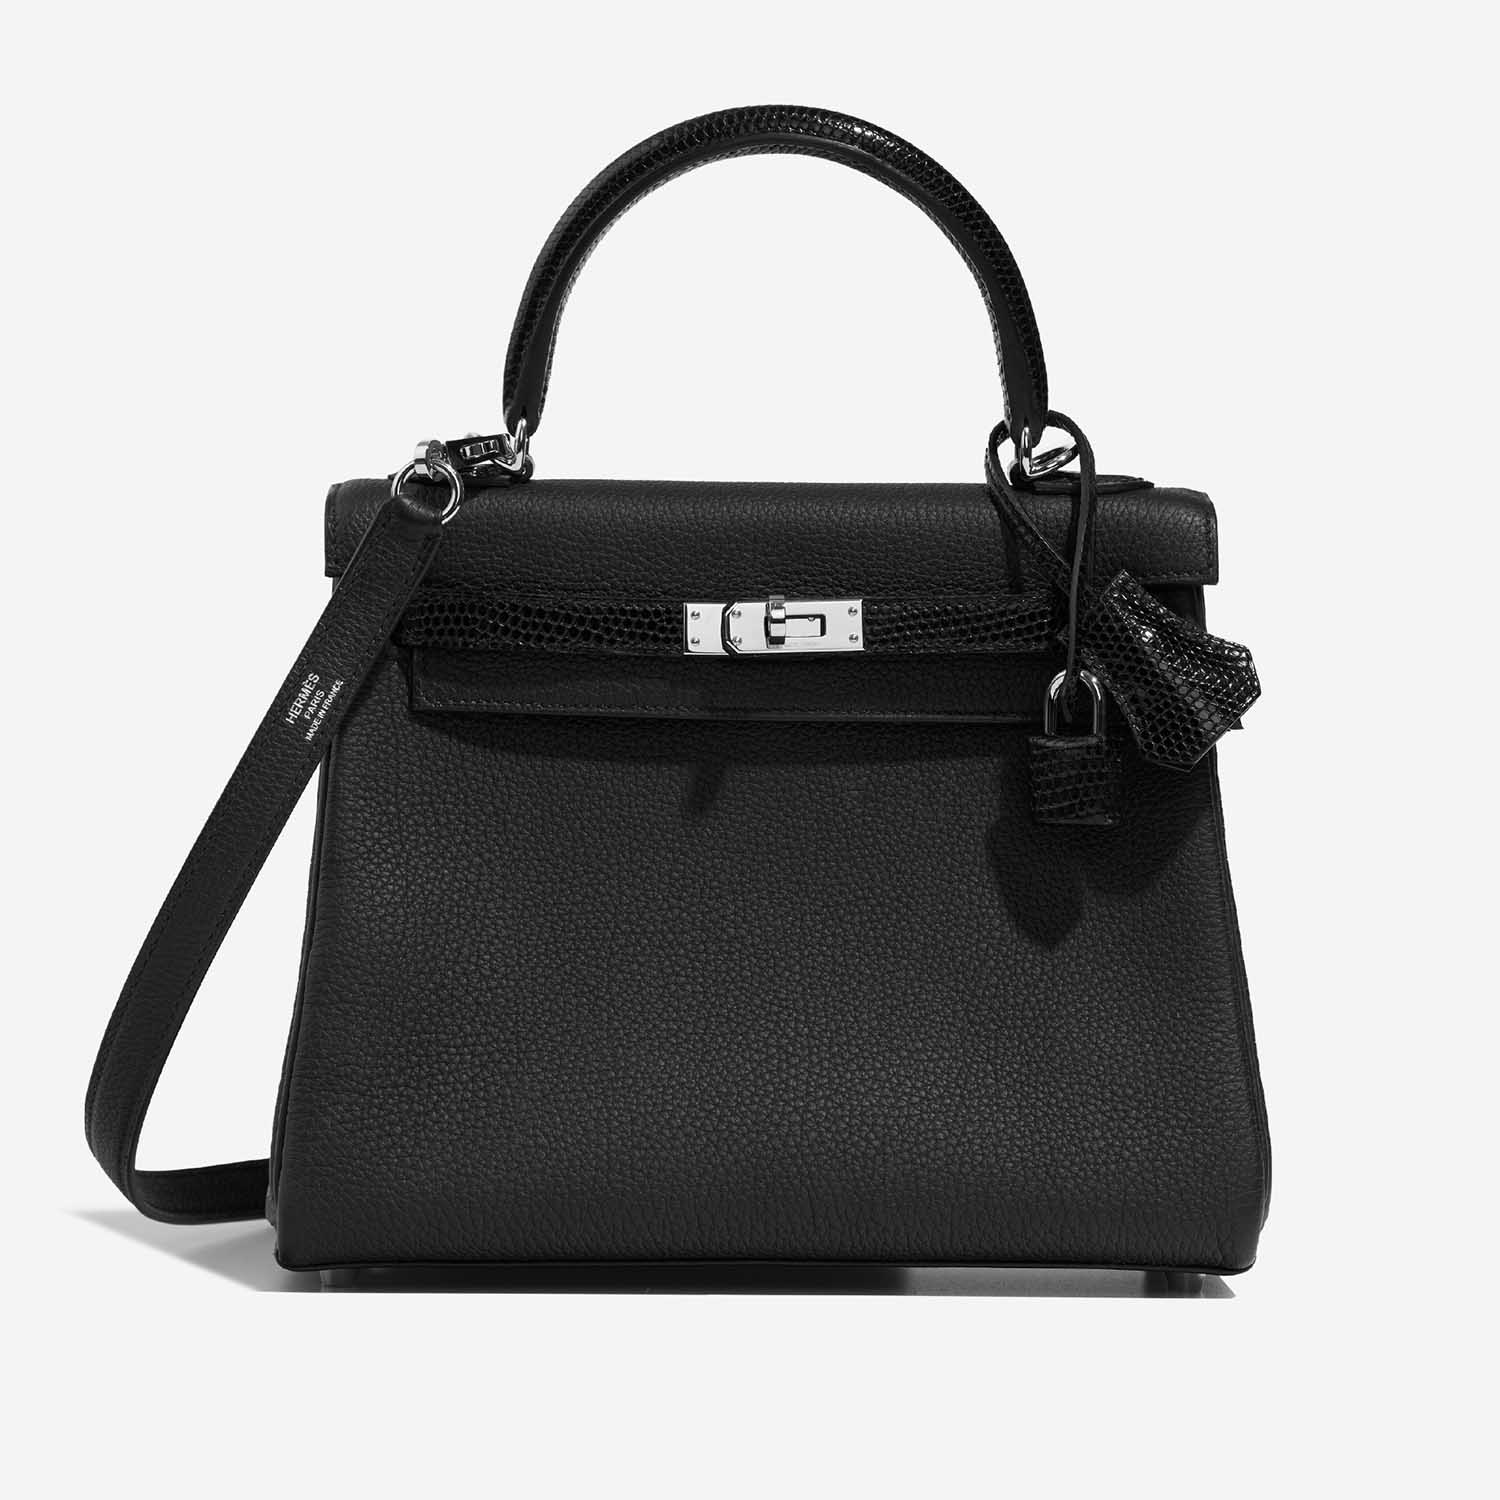 Hermès Kelly 25 Schwarz 2F S | Verkaufen Sie Ihre Designer-Tasche auf Saclab.com